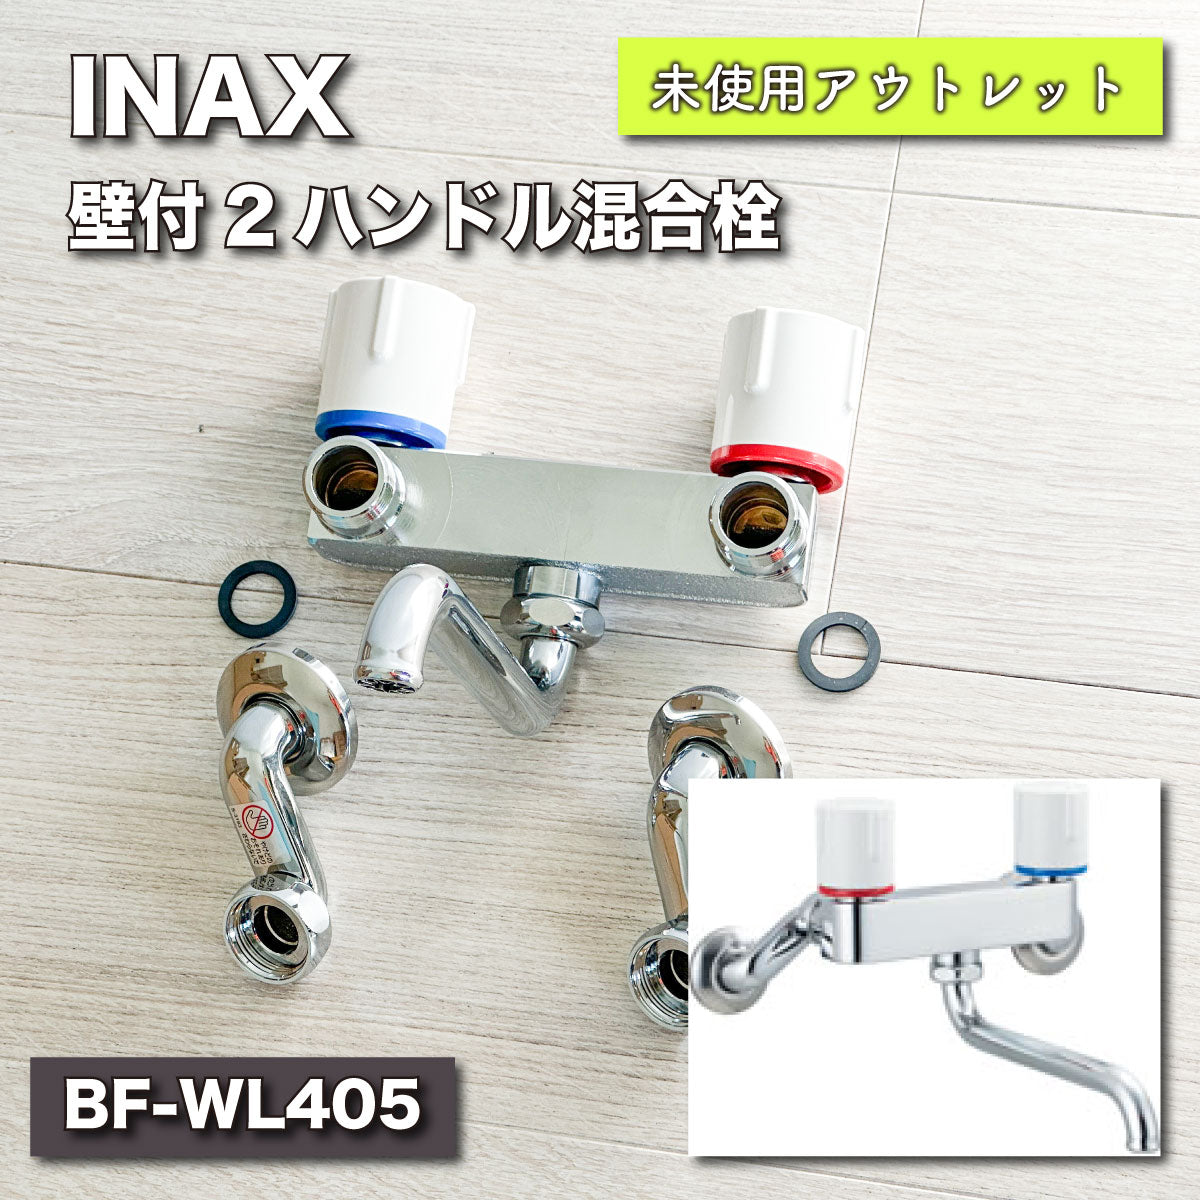 【未使用品】【開封品】【中古A】 LIXIL(リクシル) INAX 2ハンドル混合水栓(バス・キッチン兼用) ノルマーレS BF-WL405(100) 一般地仕様 吐水口長さ100㎜